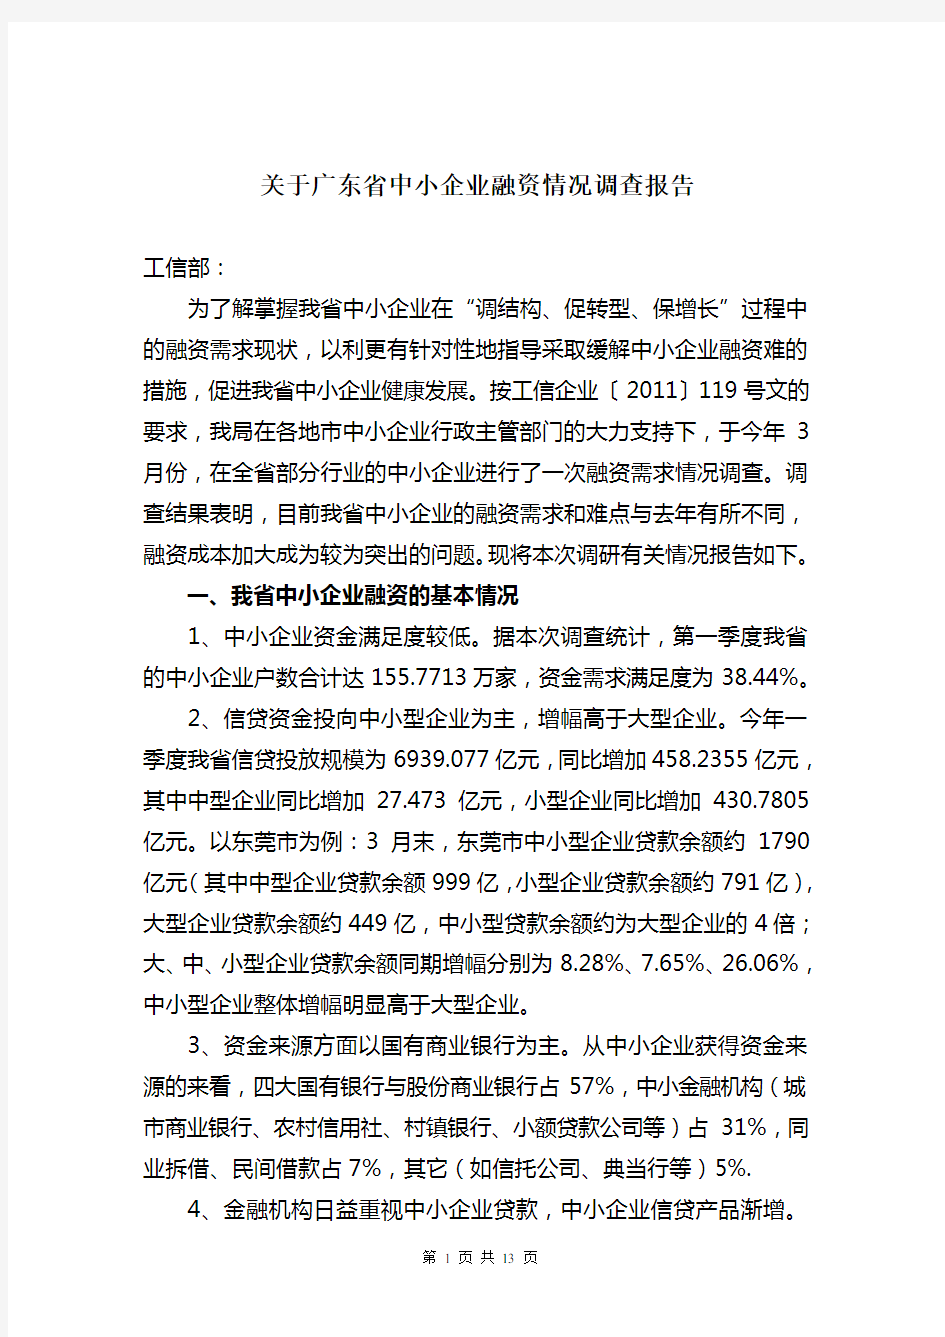 广东省中小企业融资情况调查报告1106602